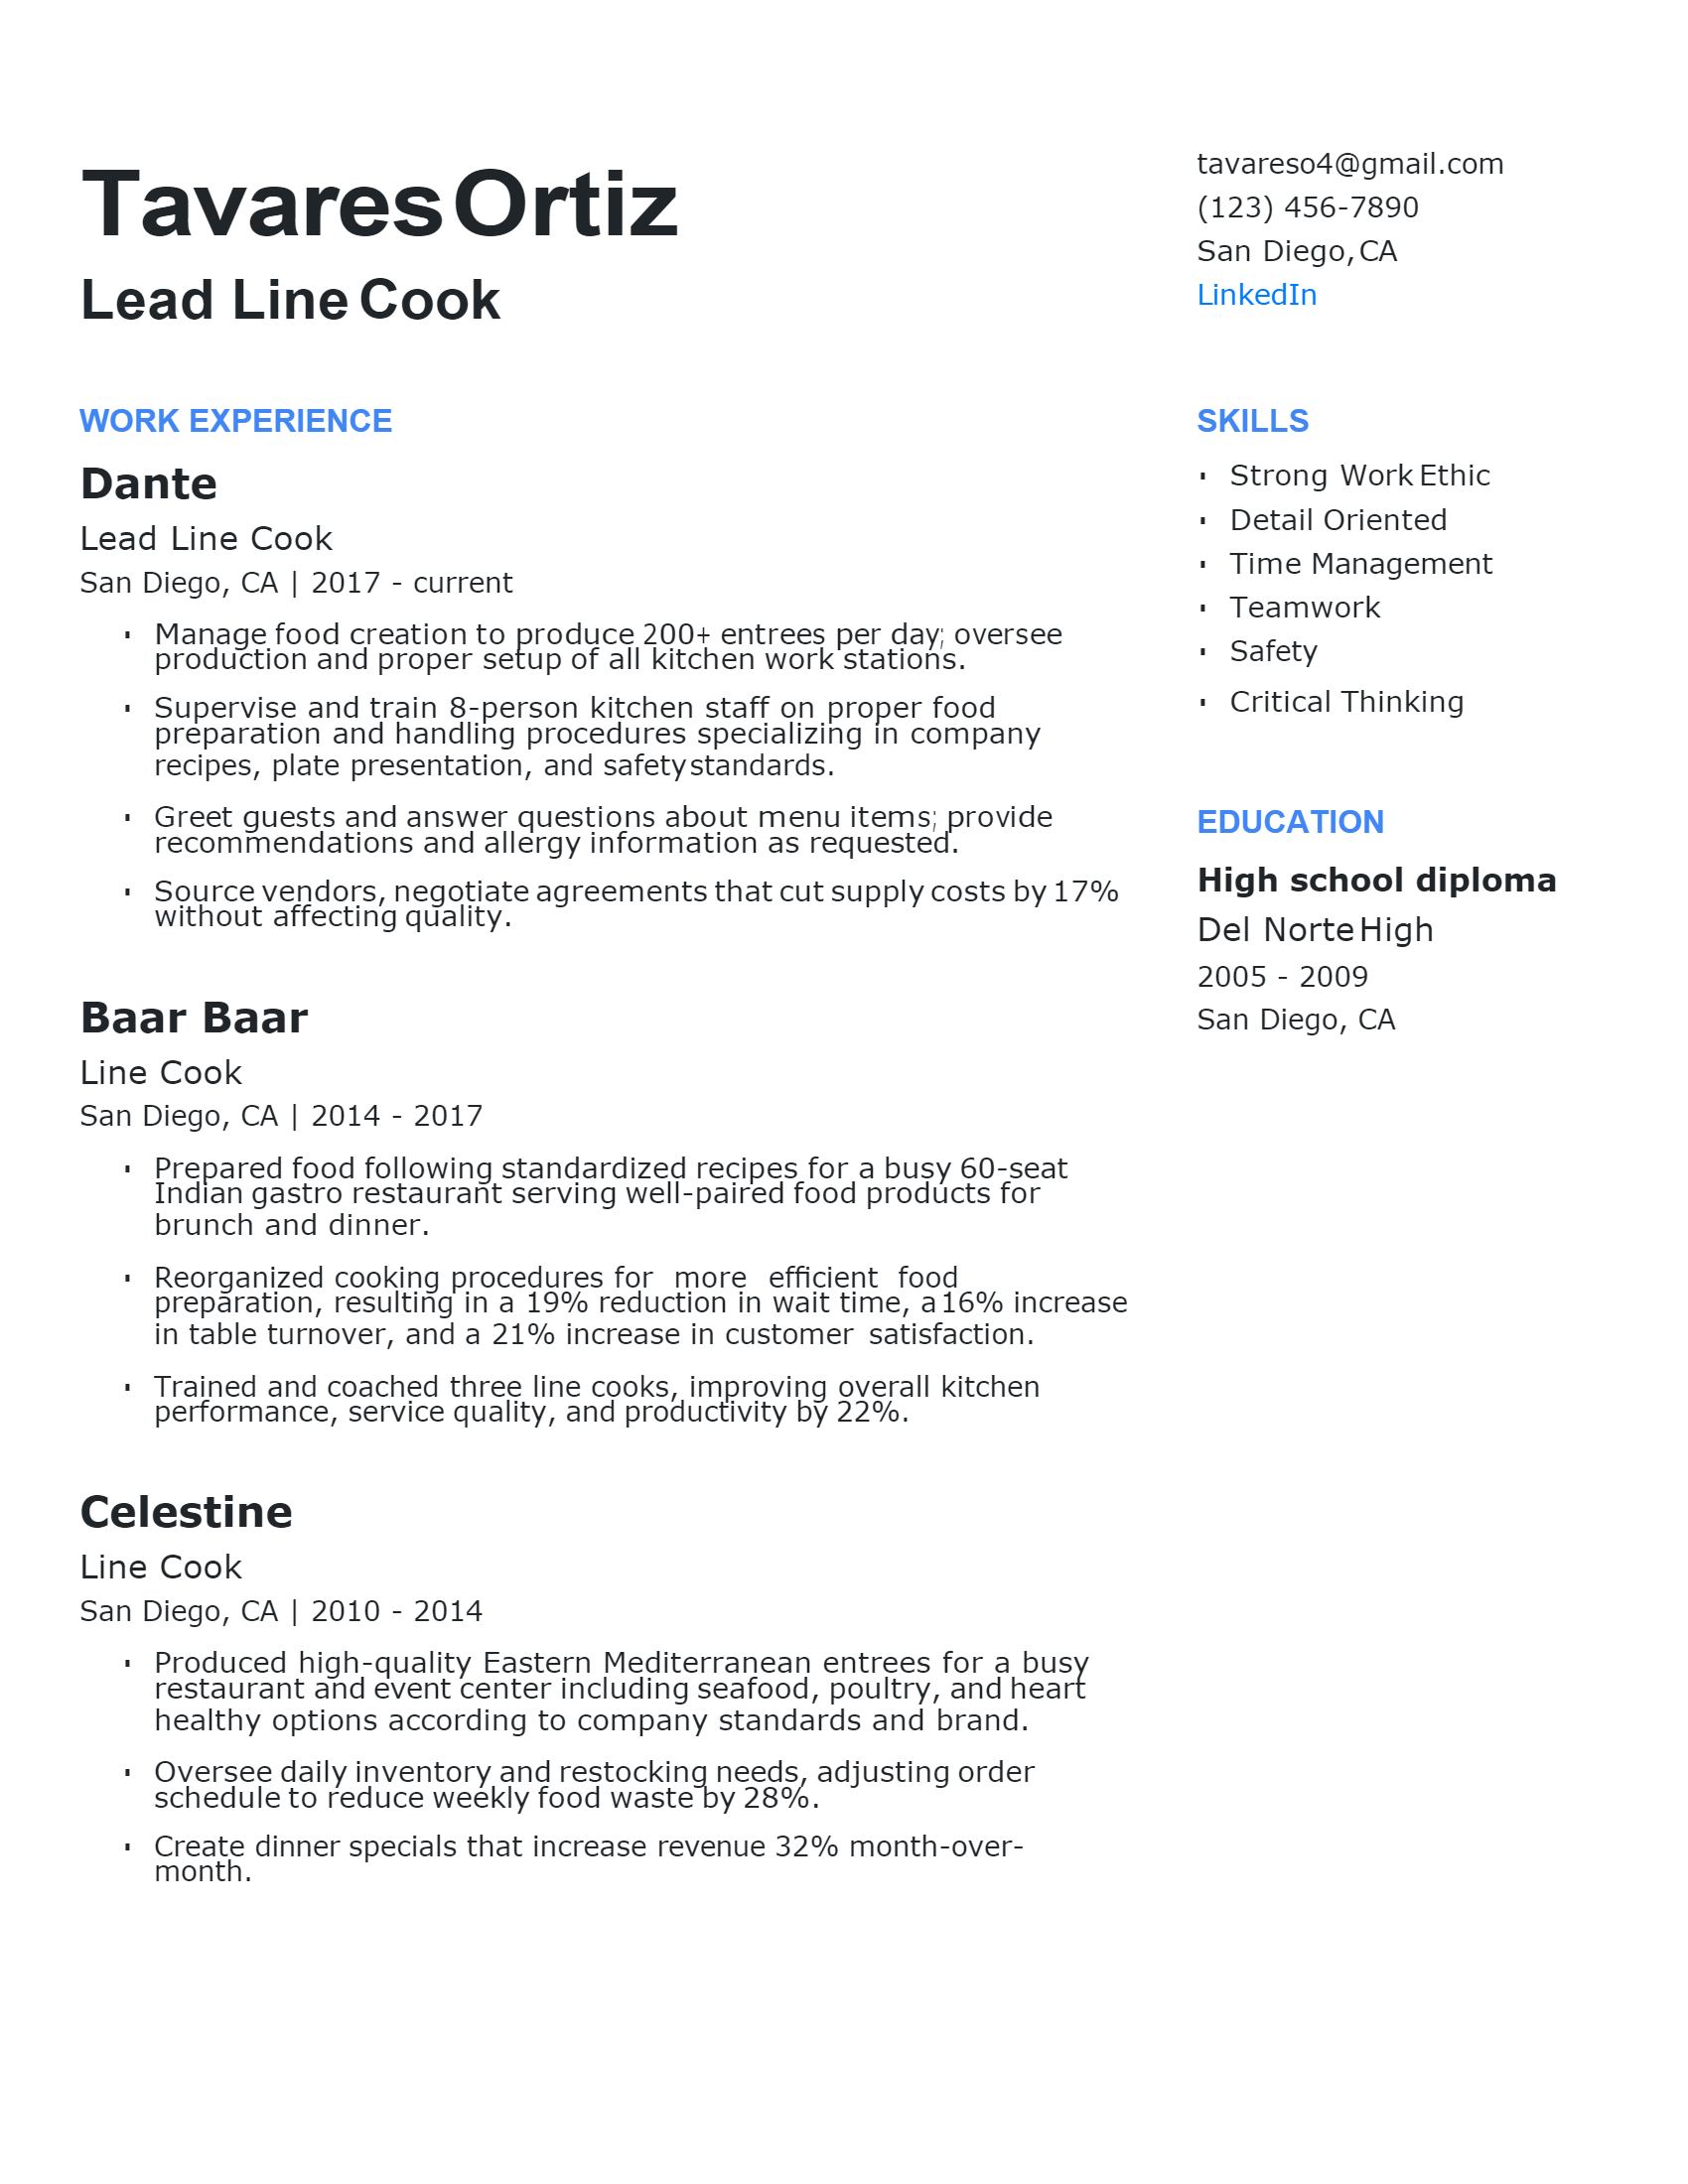 kitchen lead cook descriptions        <h3 class=